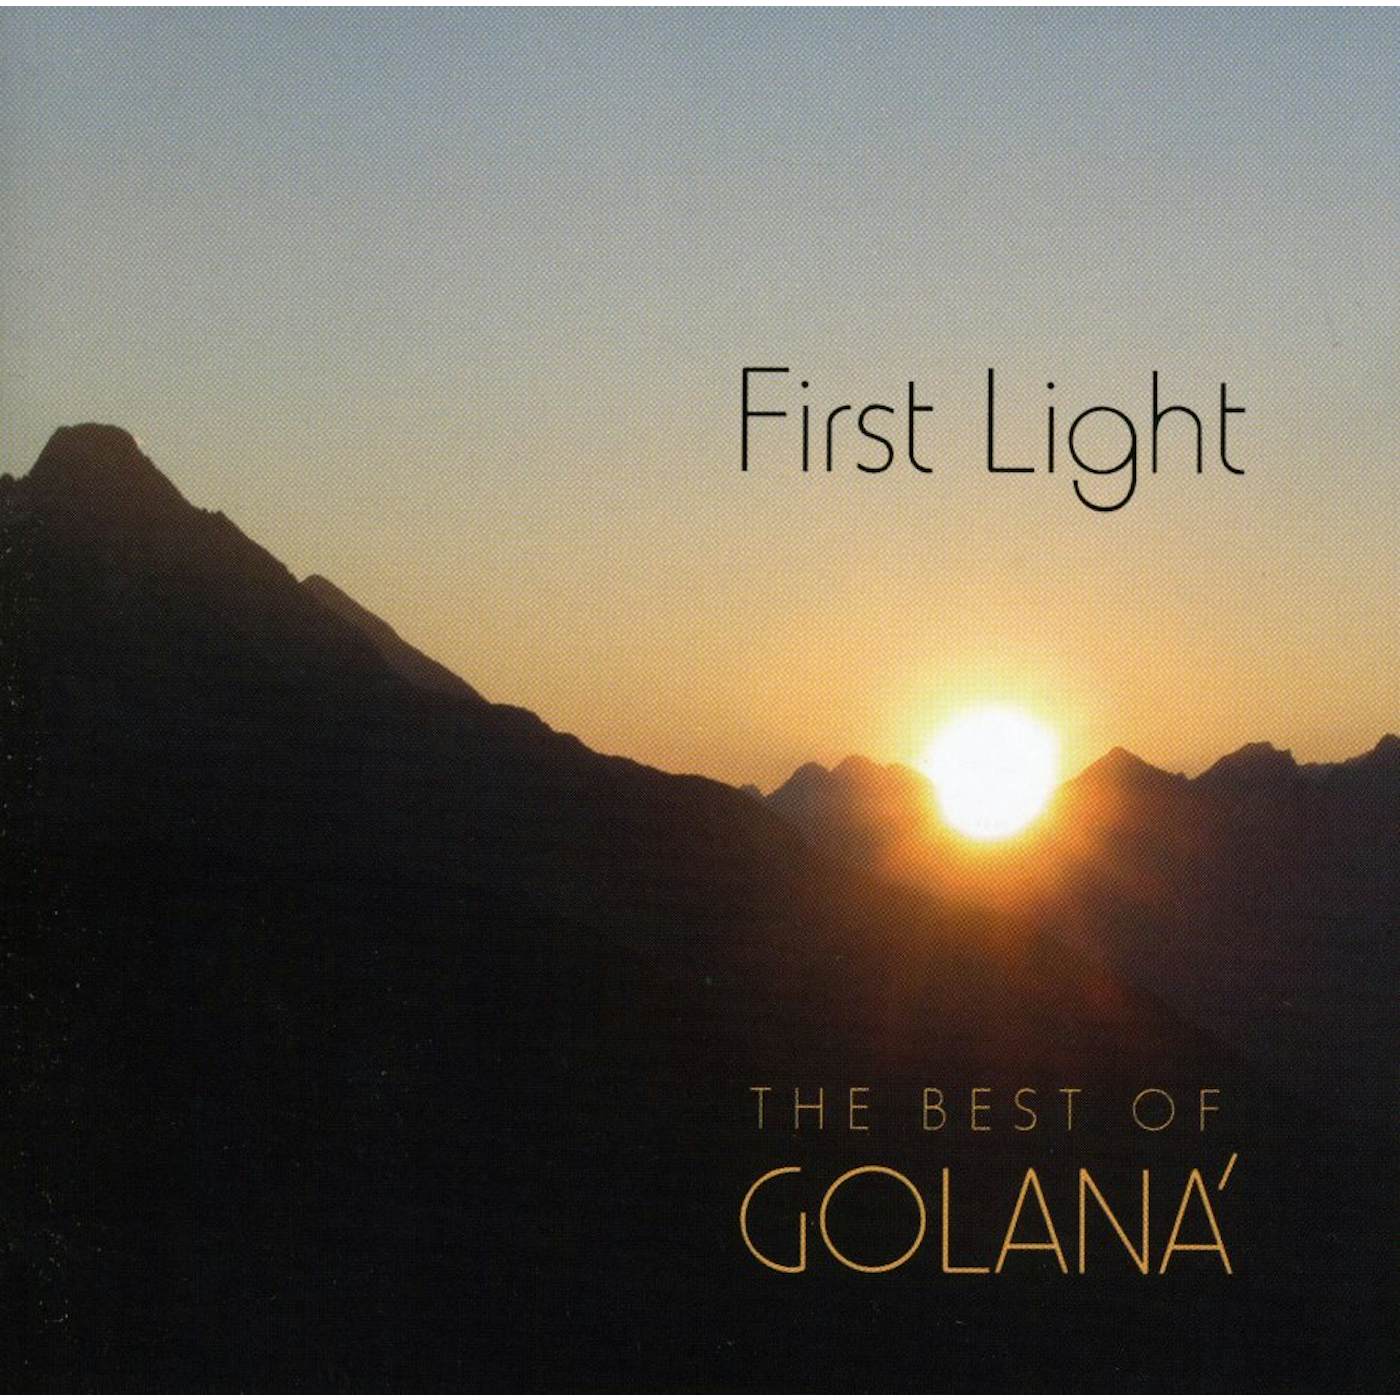 FIRST LIGHT: BEST OF GOLANA CD